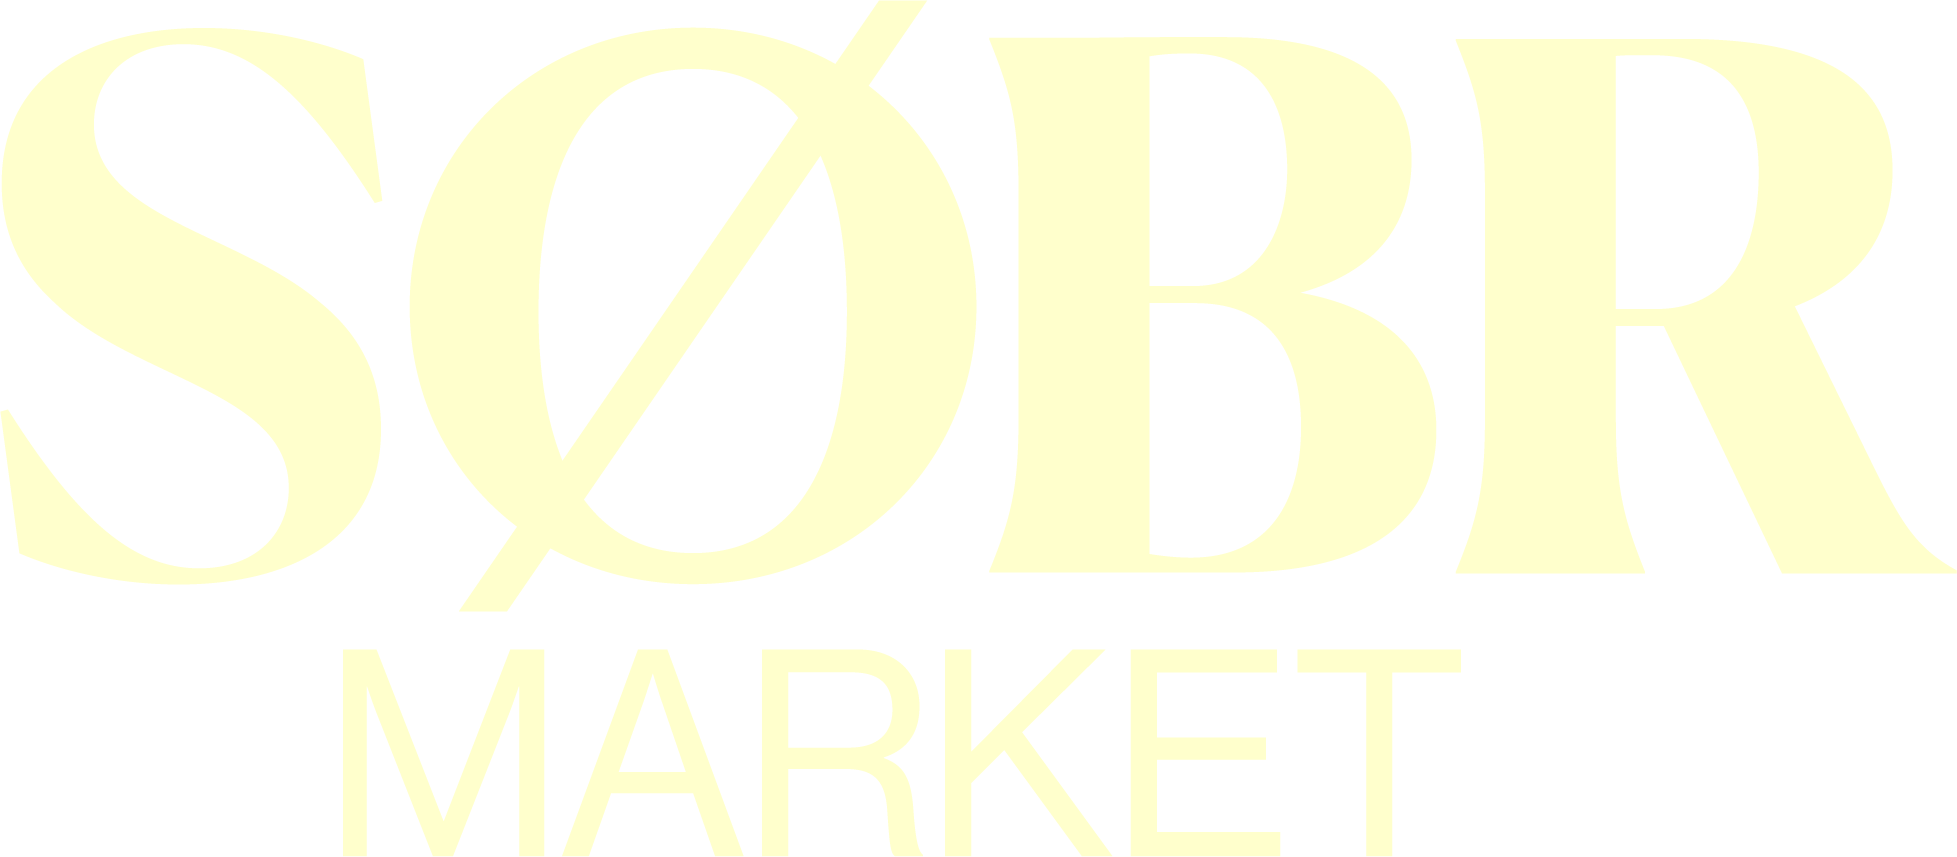 The Sobr Market